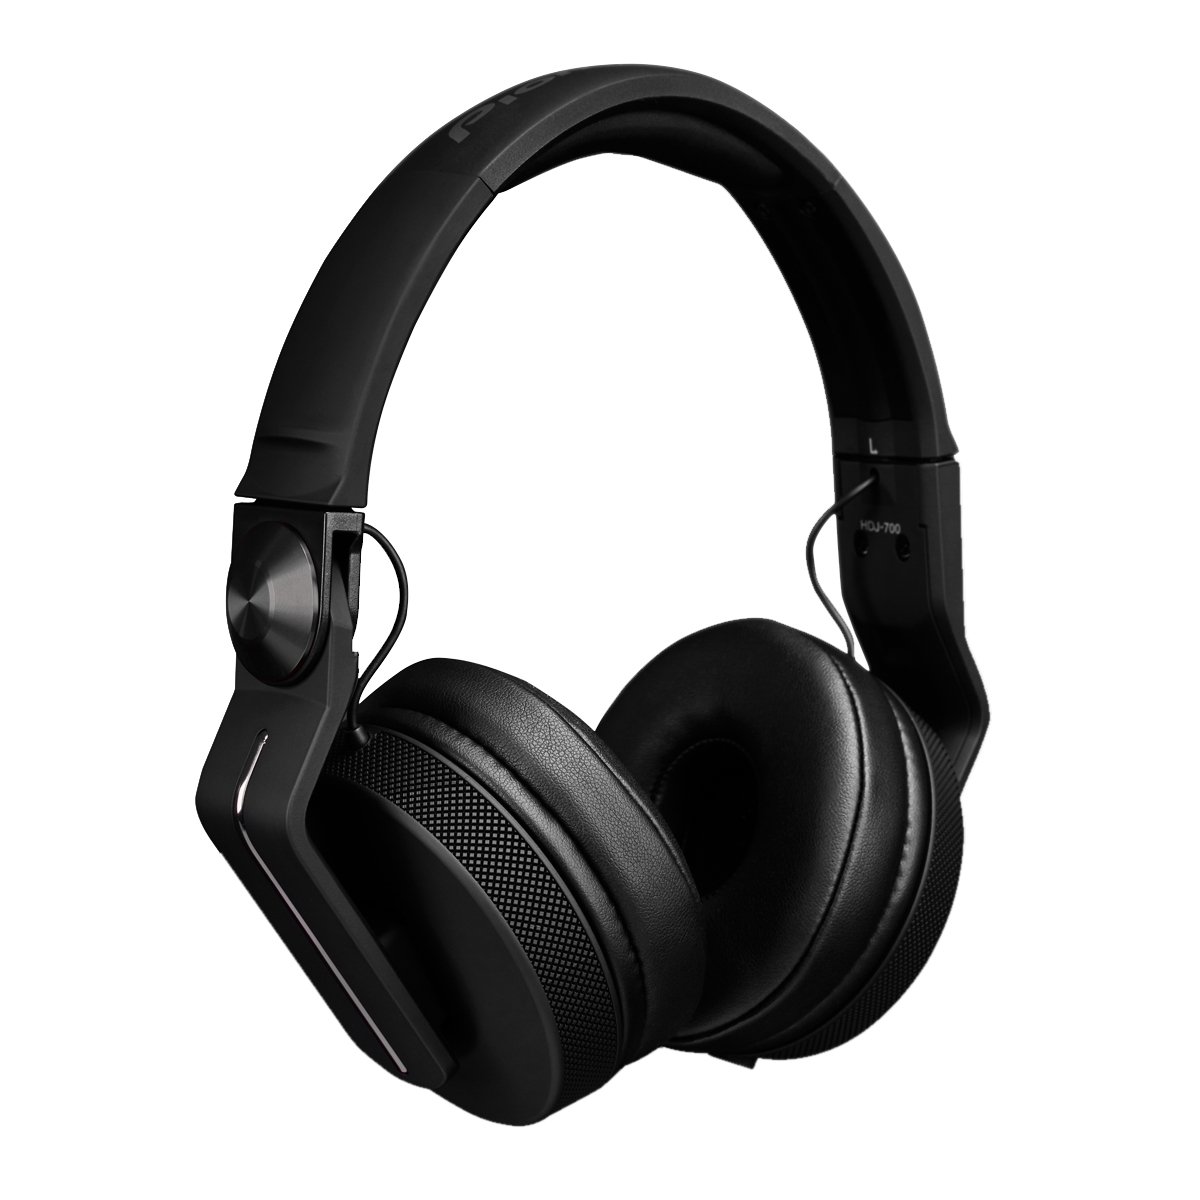 Pioneer HDJ-700 Black Headphones